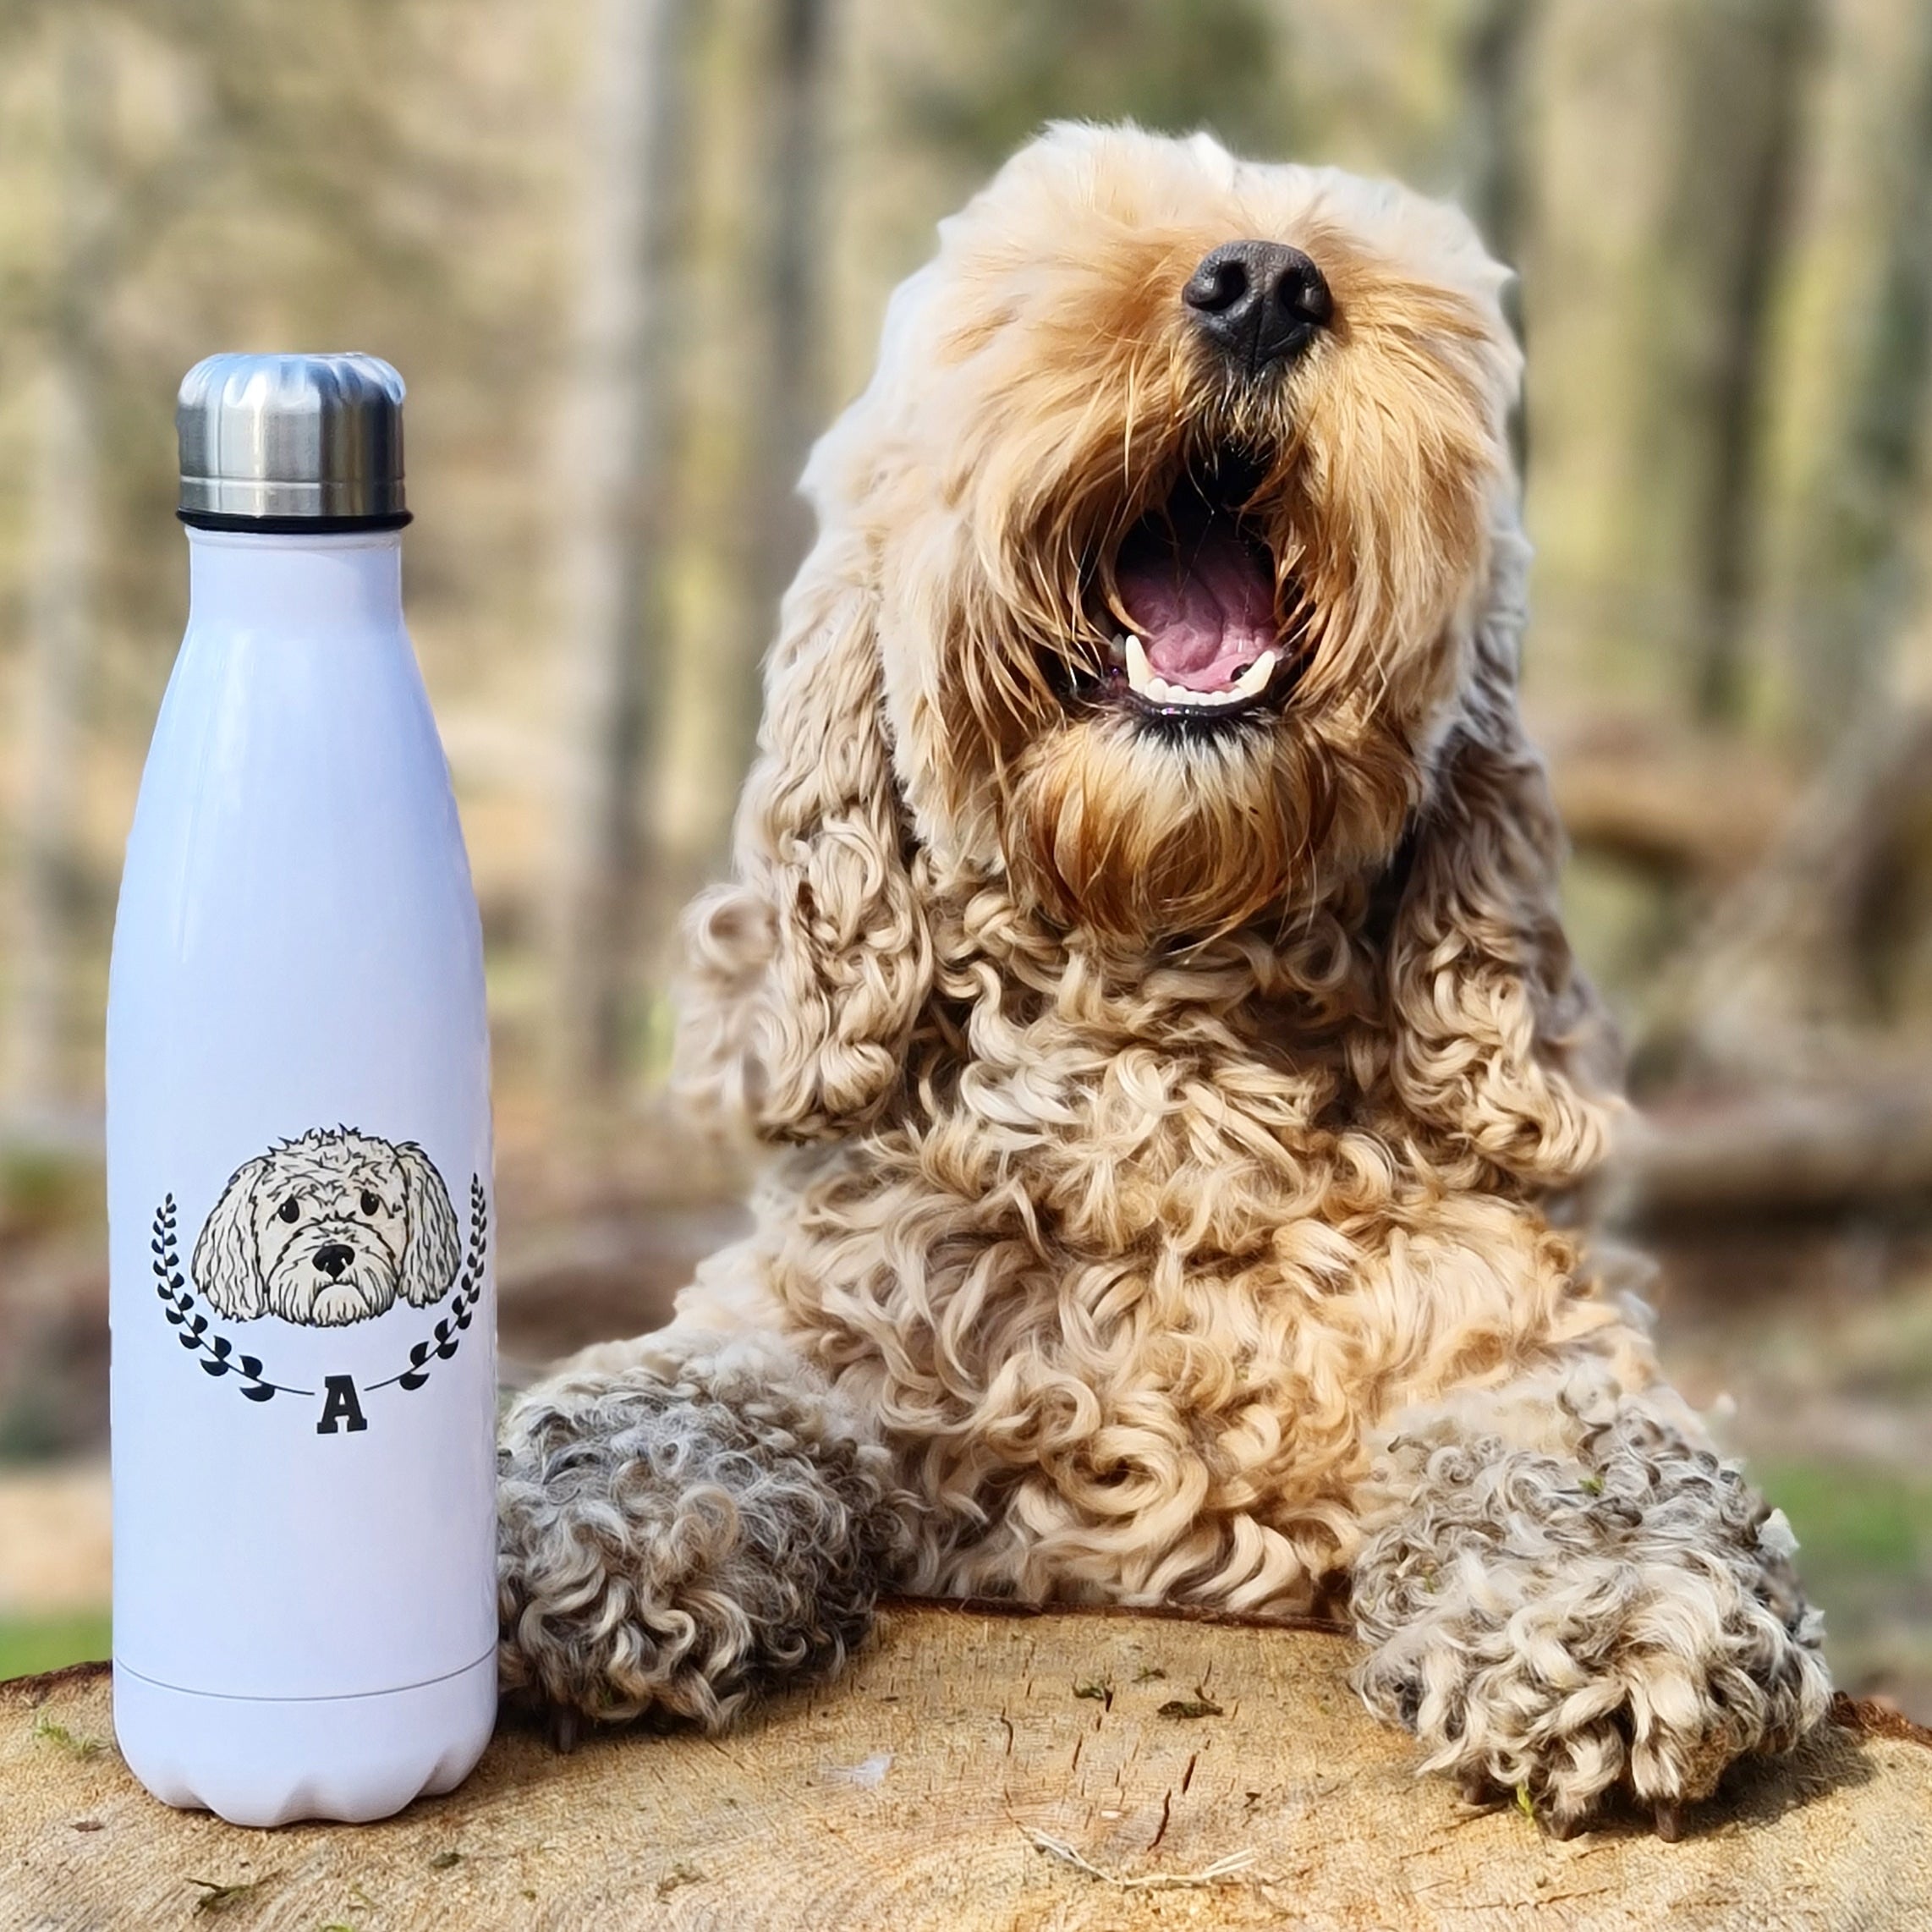 The Ulti-Mutt Dog Water Bottle